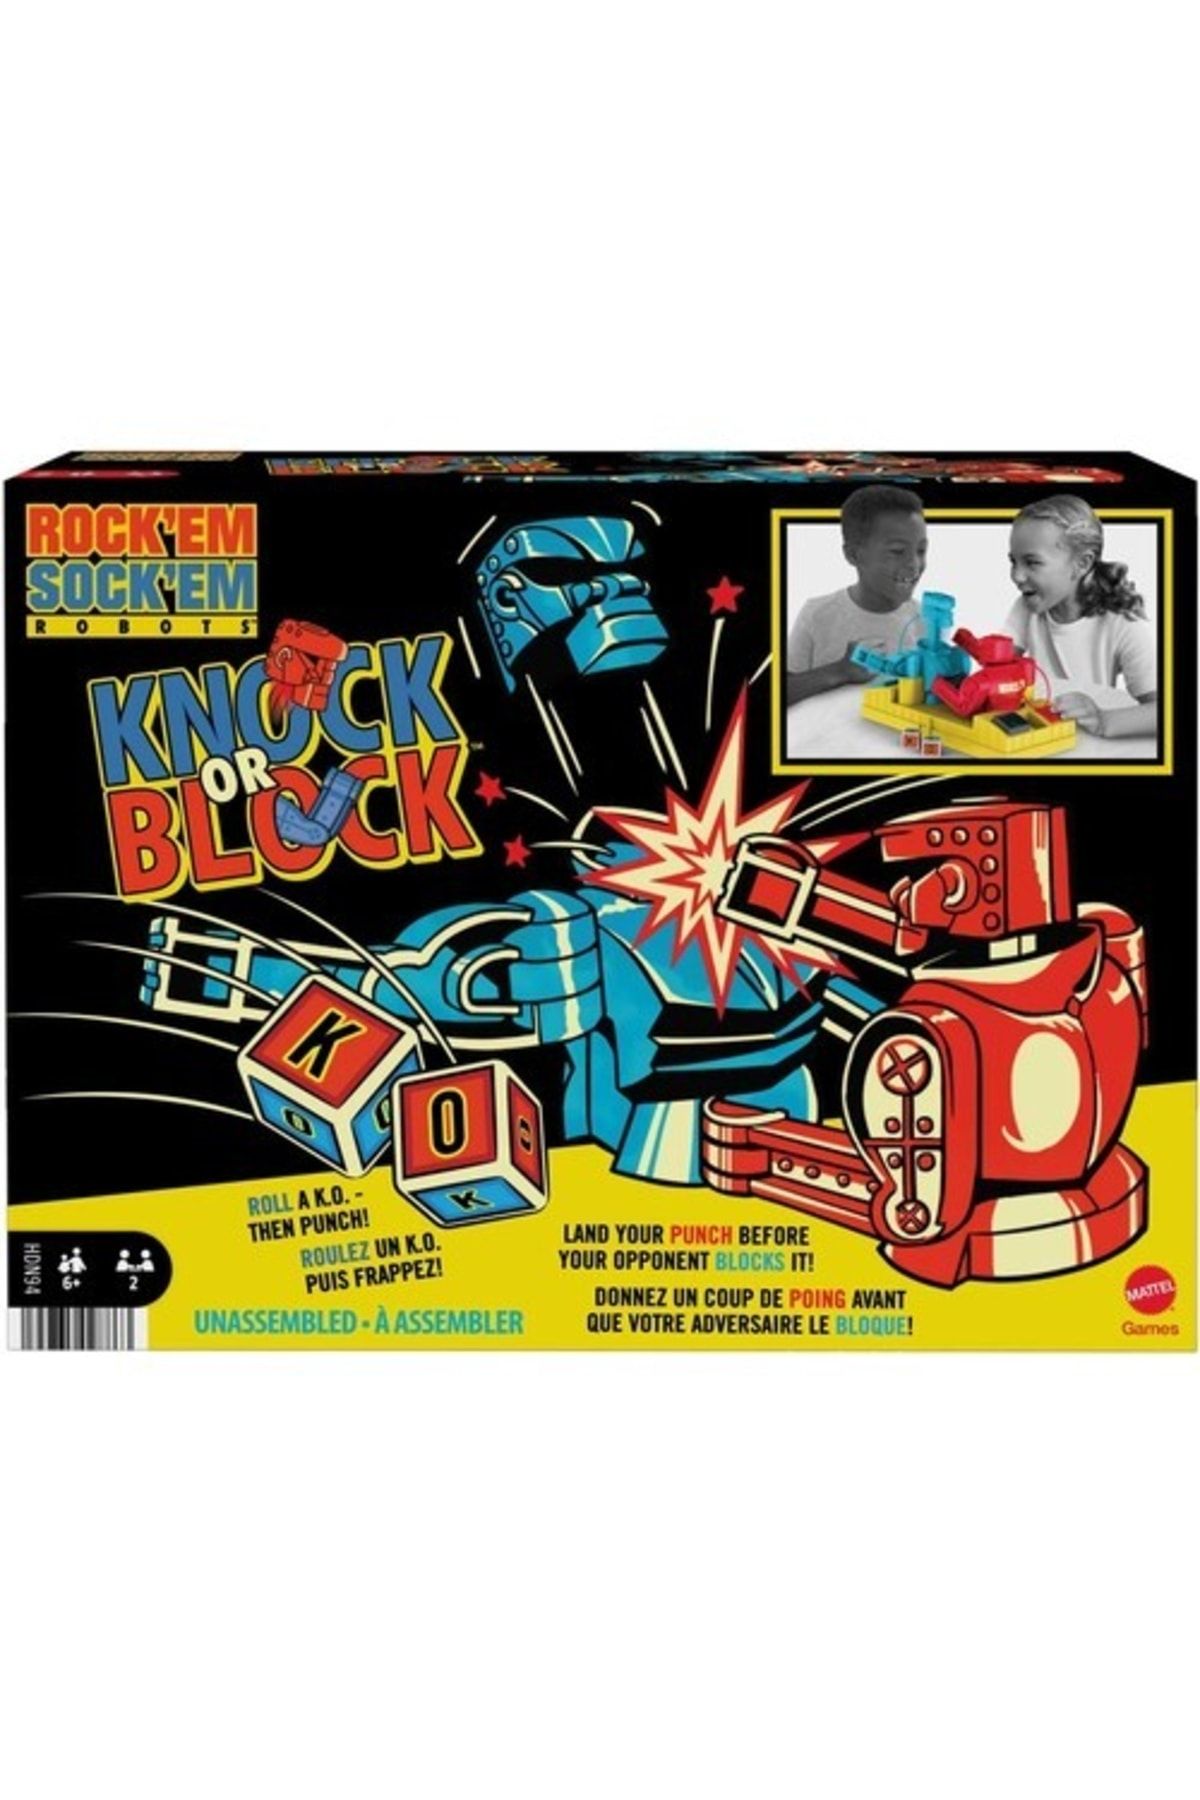 Fisher Price Rock 'em Sock 'em Robotlar Eğlenceli 6 Yaş Ve Üzeri Kutu Oyunu